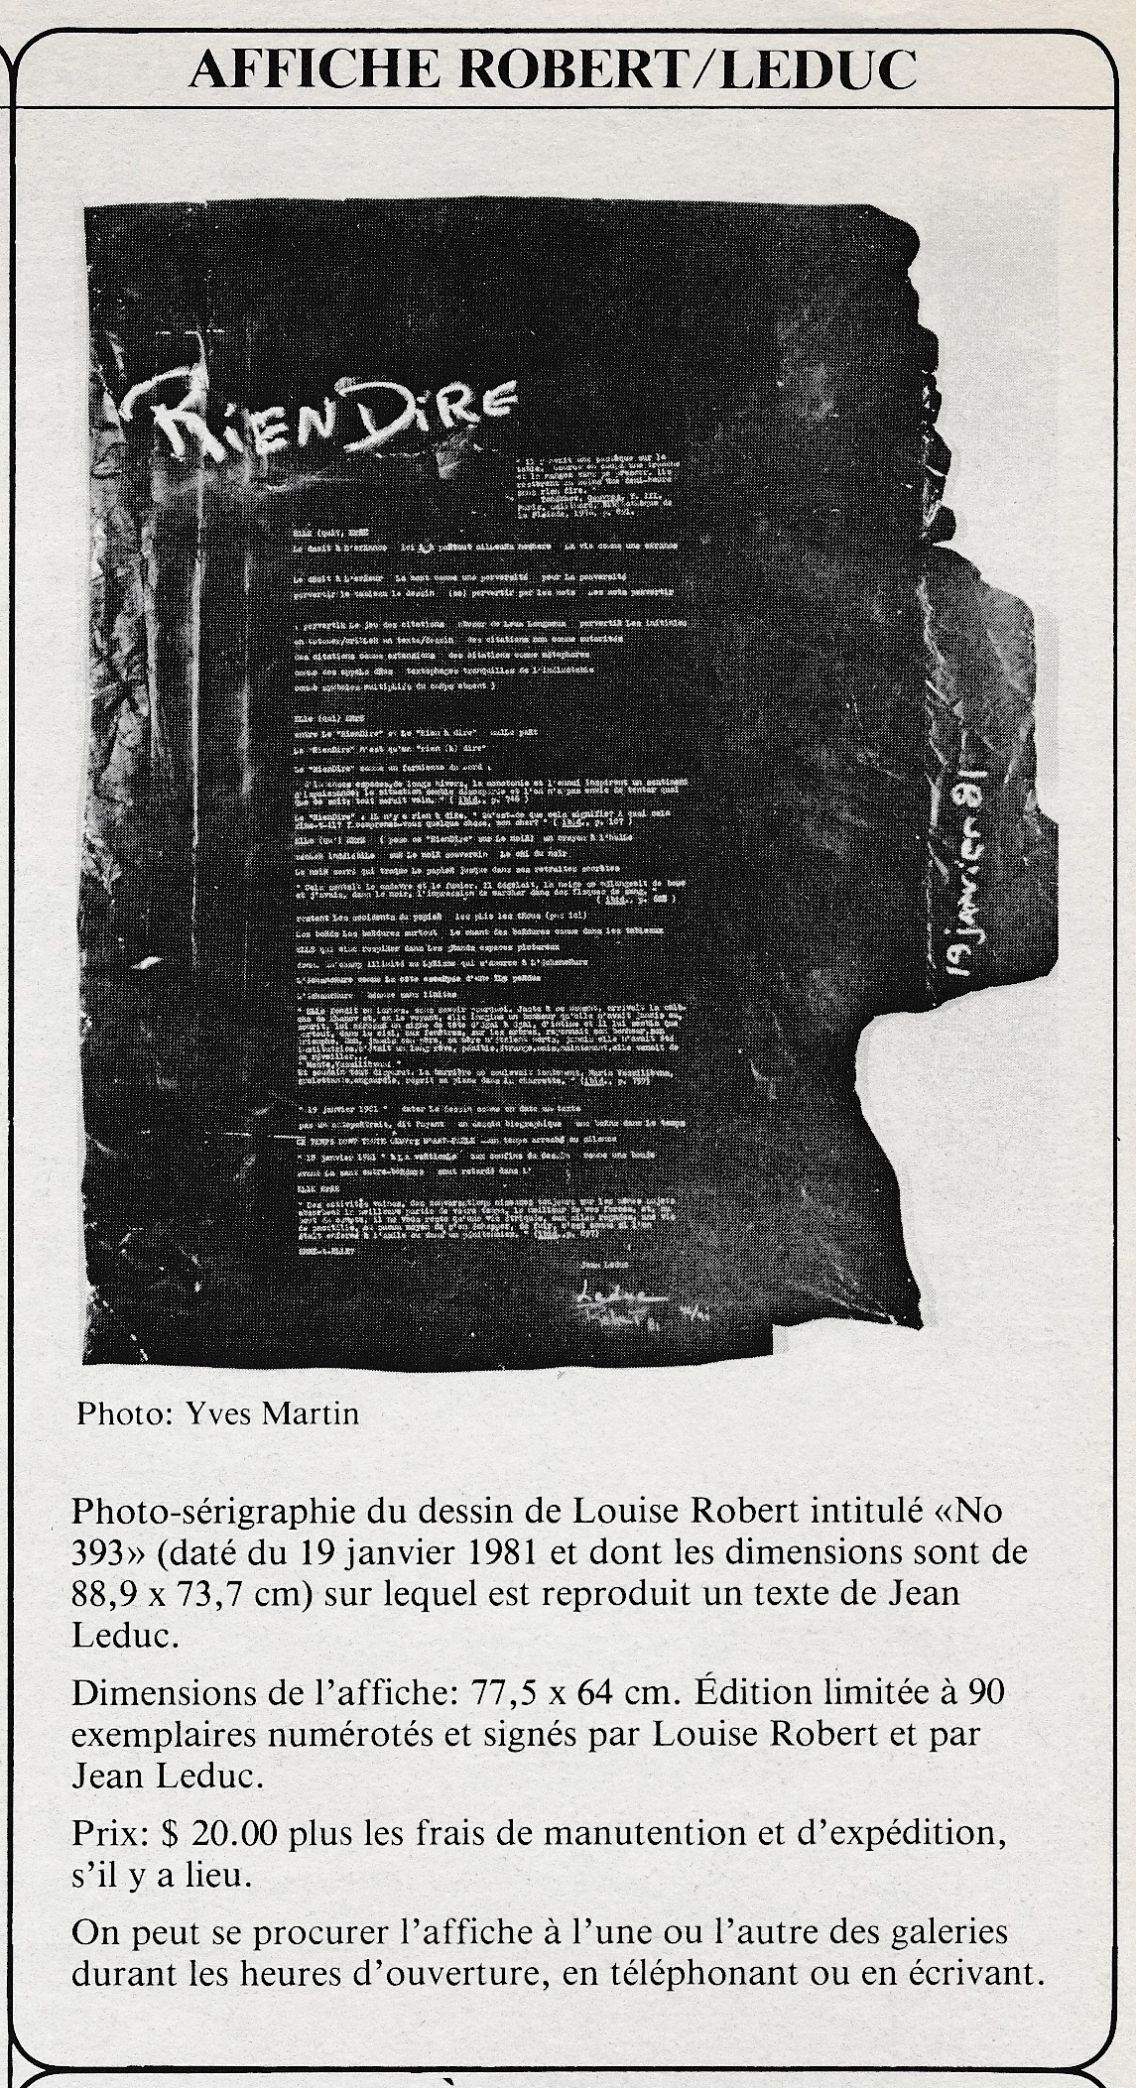 « Affiche Robert/Leduc » dans Bulletin de la Galerie Jolliet, n° 7 septembre 1981, p. 2.